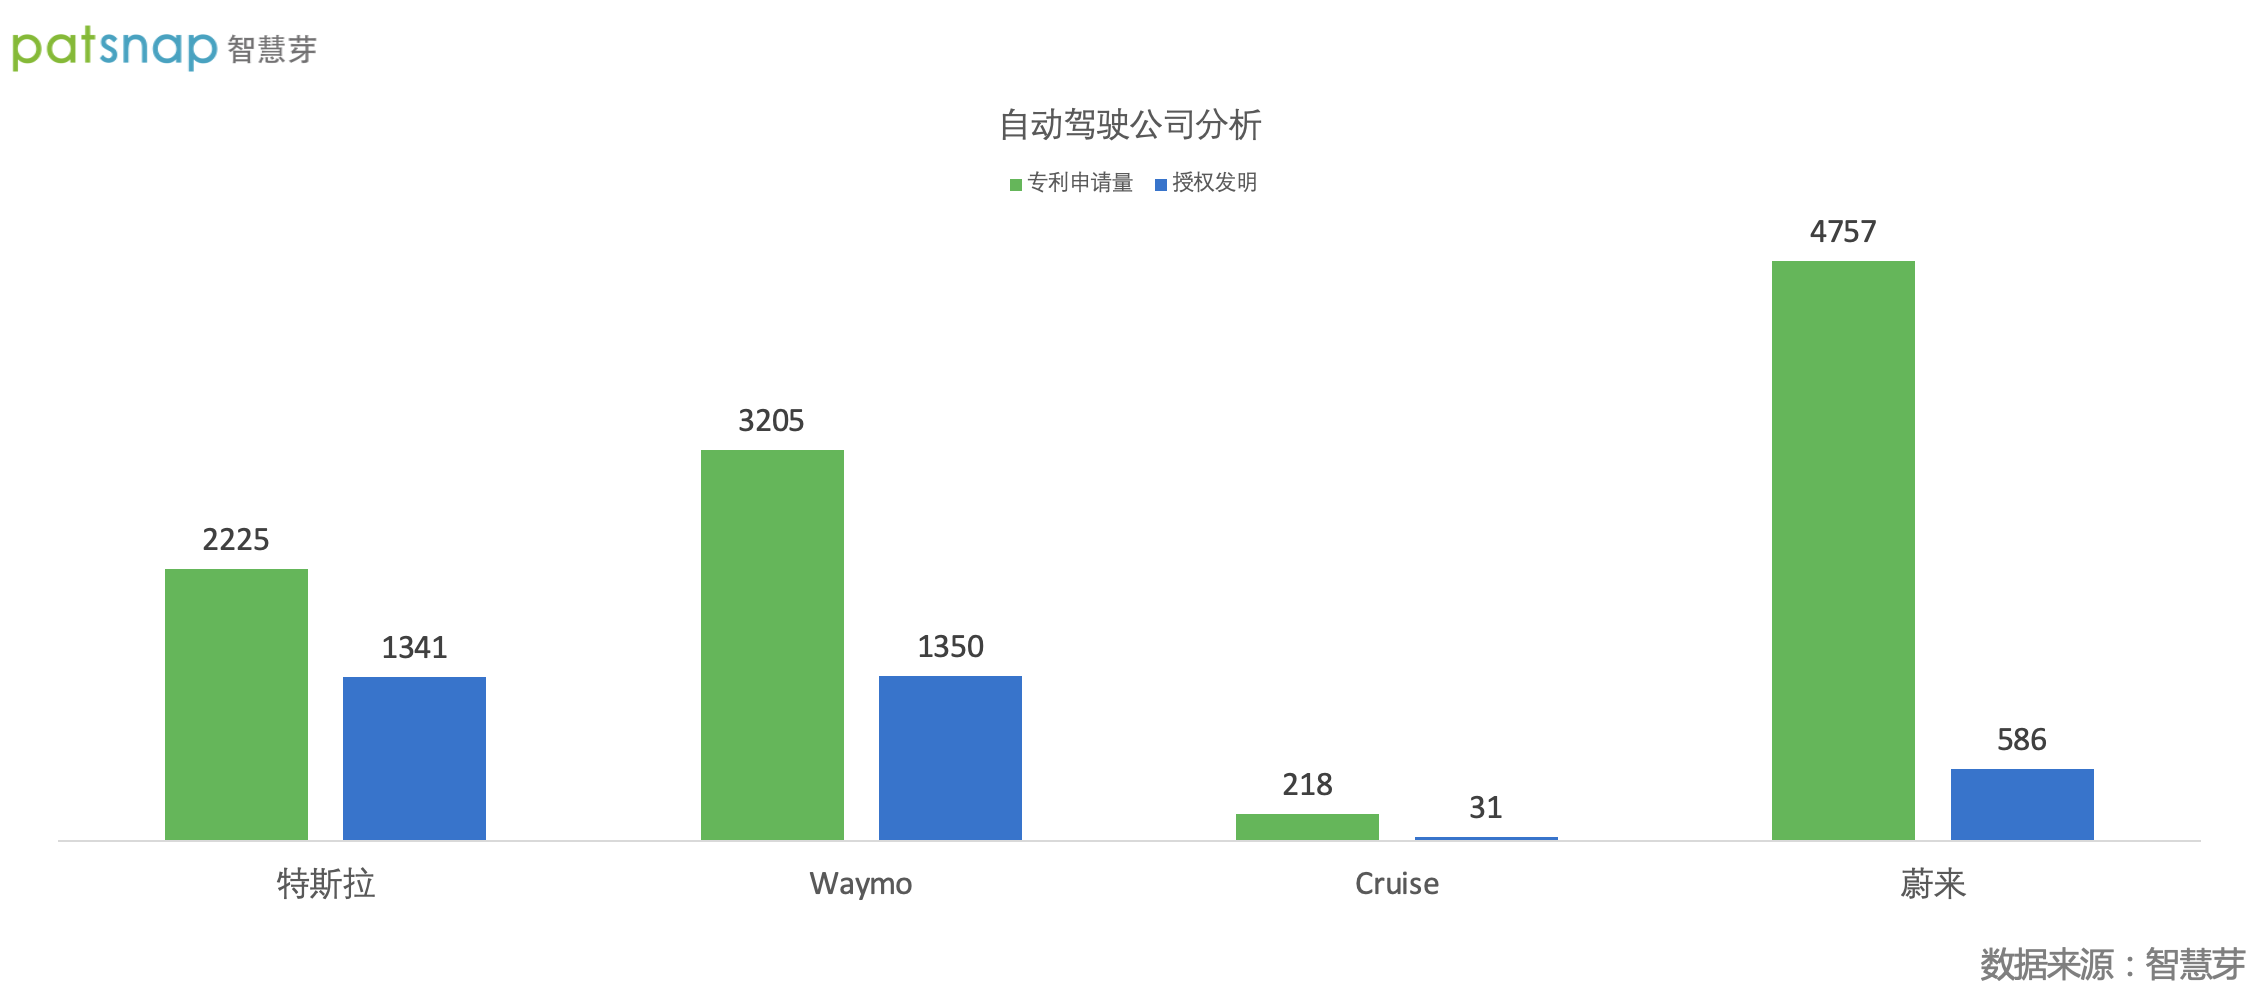 特斯拉已公开专利2225件 不到Waymo的70%